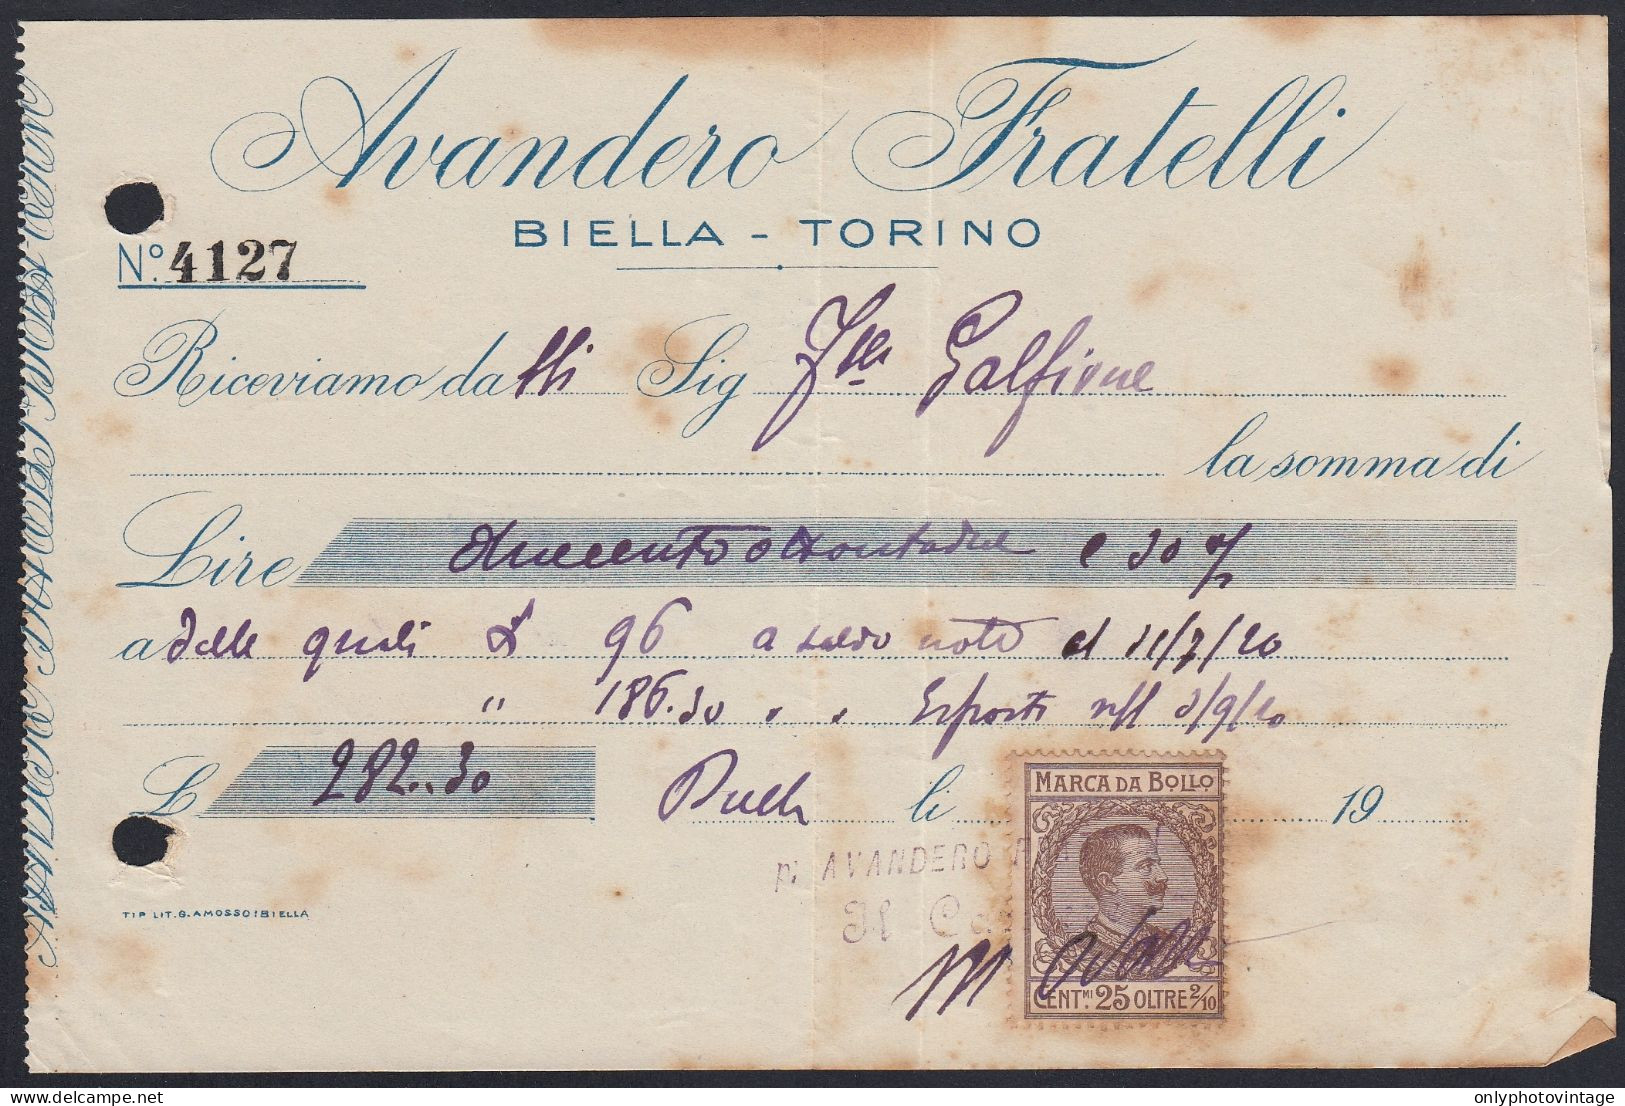 Biella 1920 - Avandero Fratelli - Marca Da Bollo - Ricevuta Pagamento - Italy